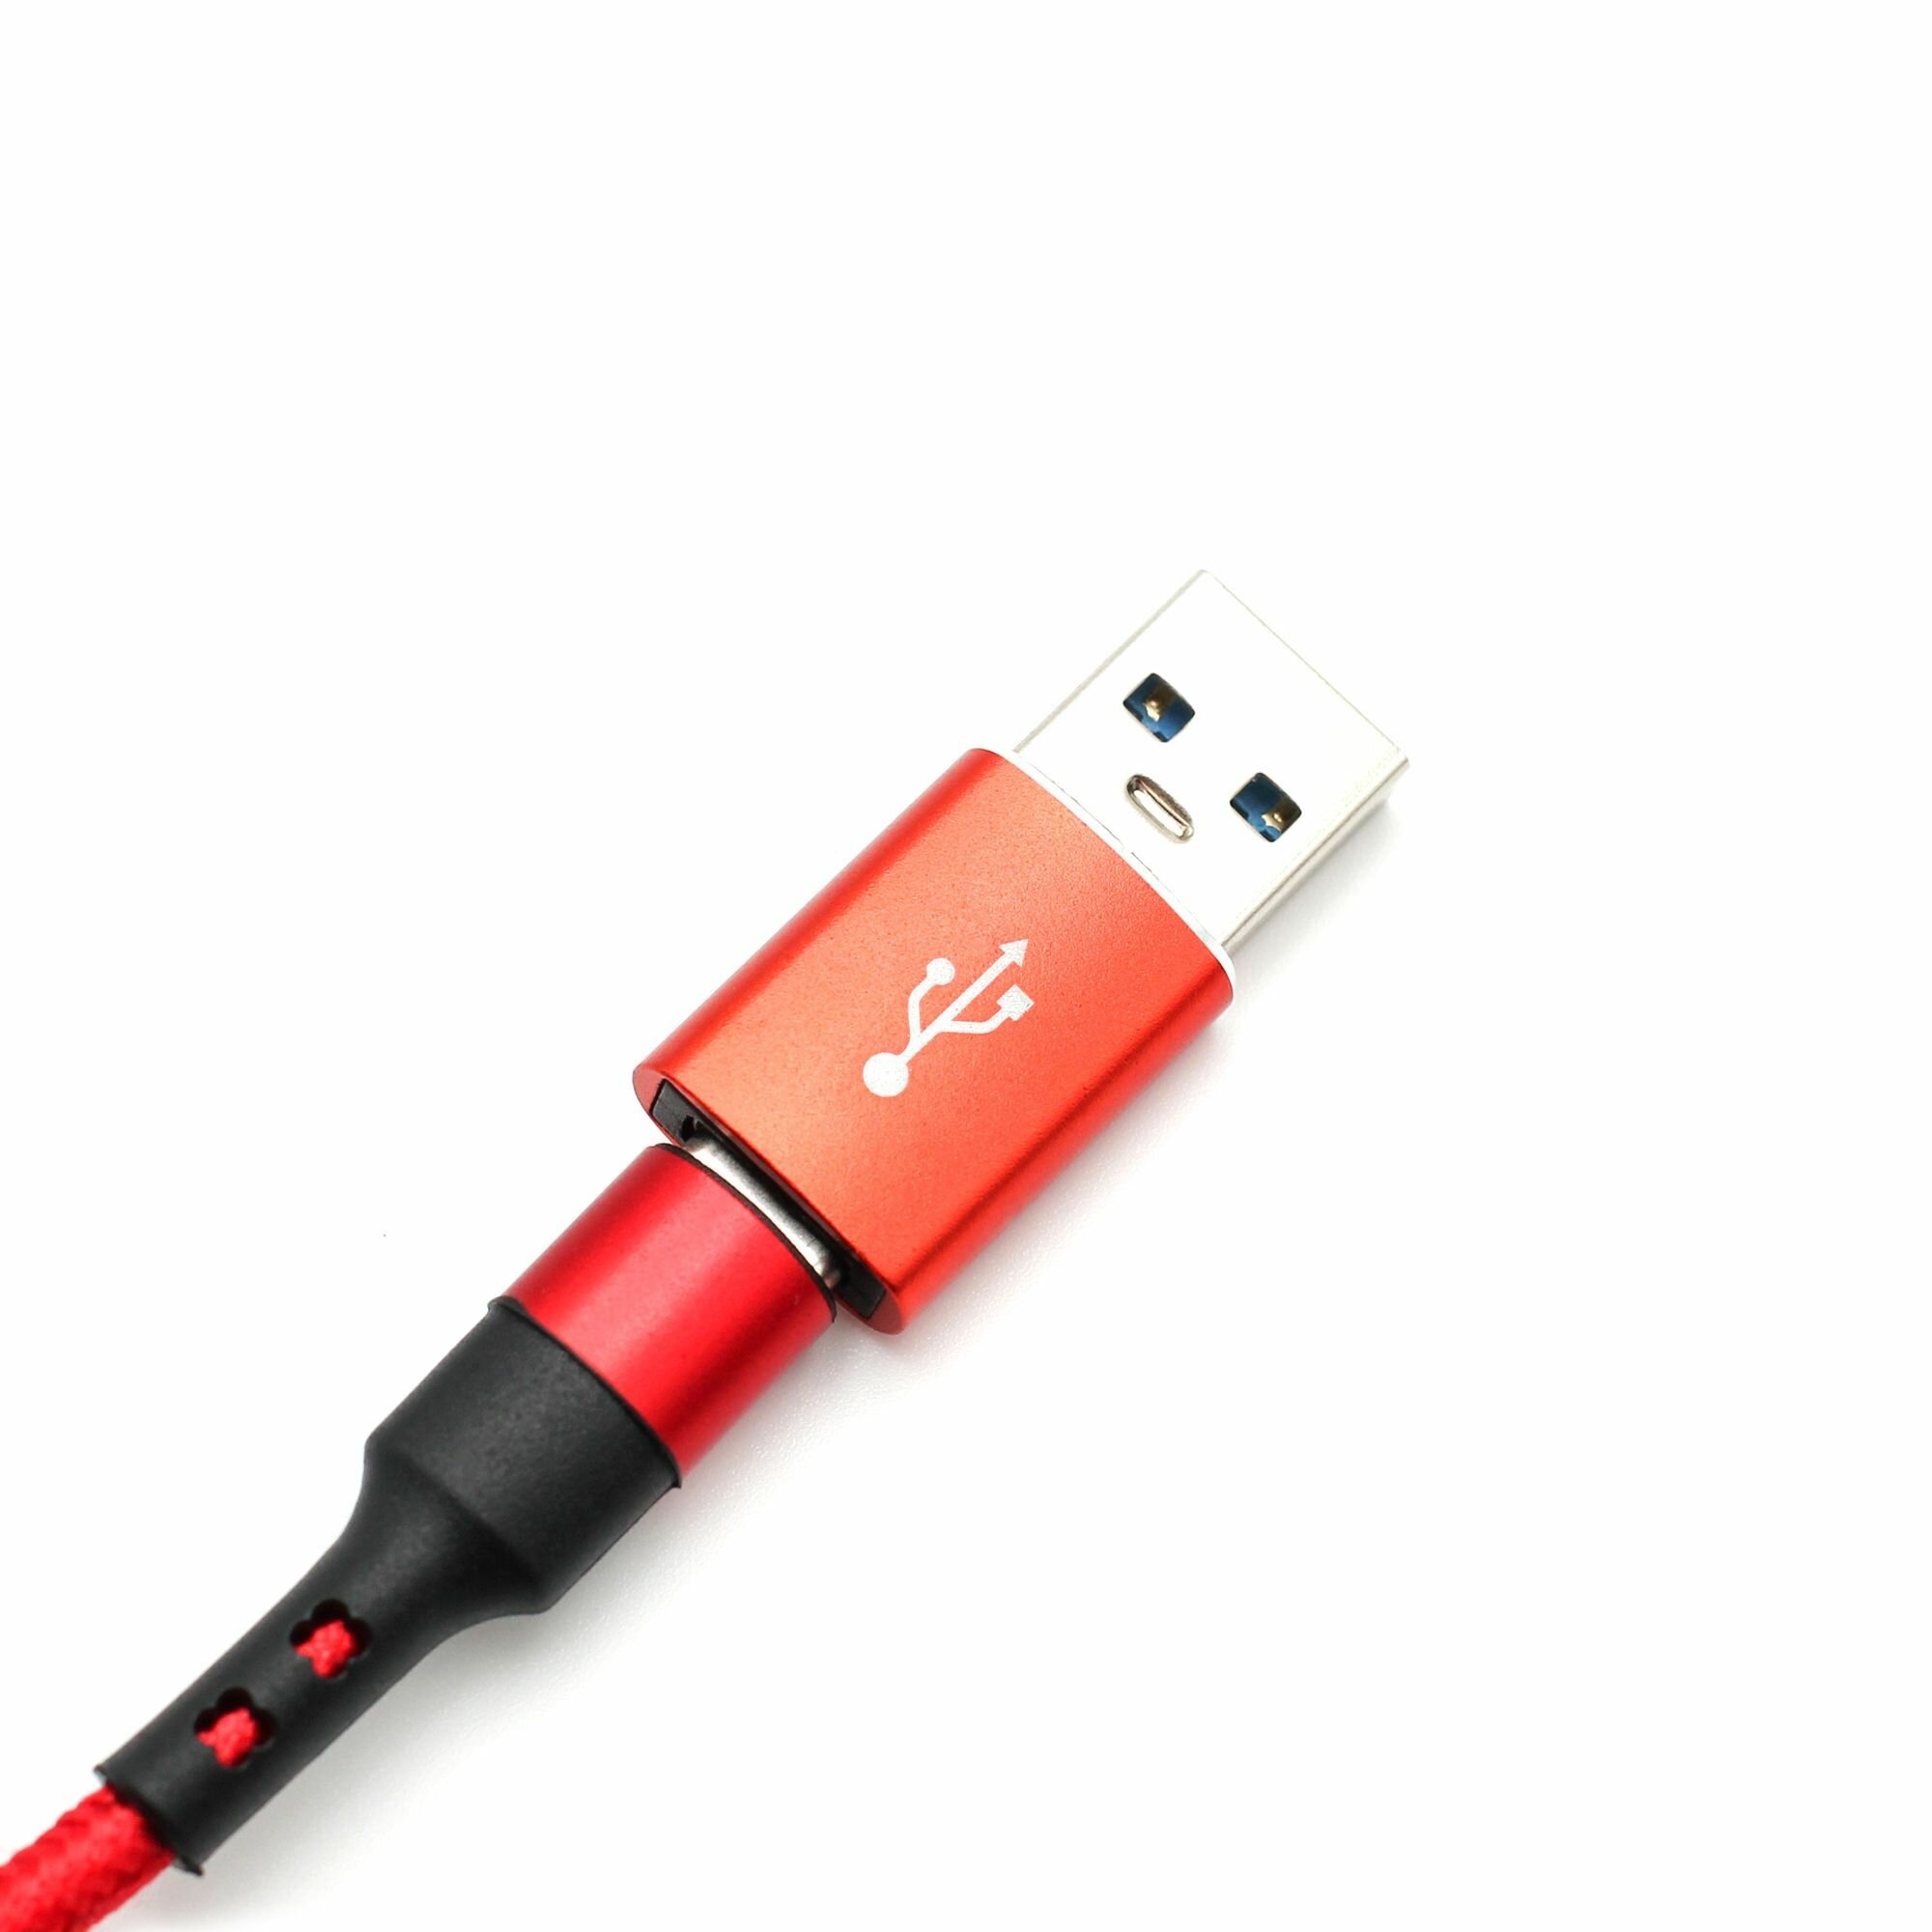 Переходник Jamme с USB 3.0 (папа/выход) на Type-C (мама/вход), Адаптер OTG Type-C для мобильных устройств, планшетов, смартфонов и компьютеров, красный